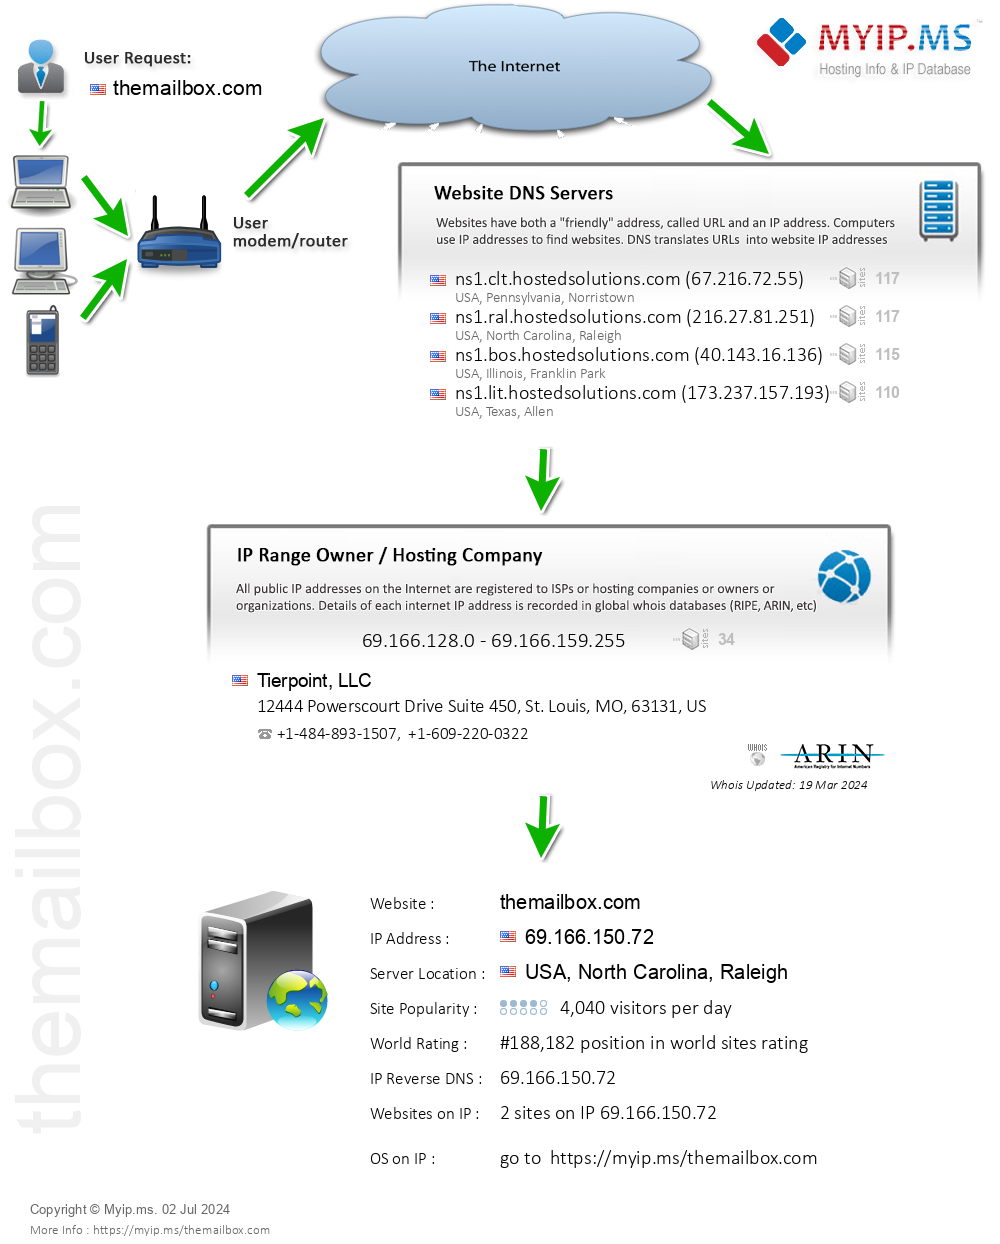 Themailbox.com - Website Hosting Visual IP Diagram